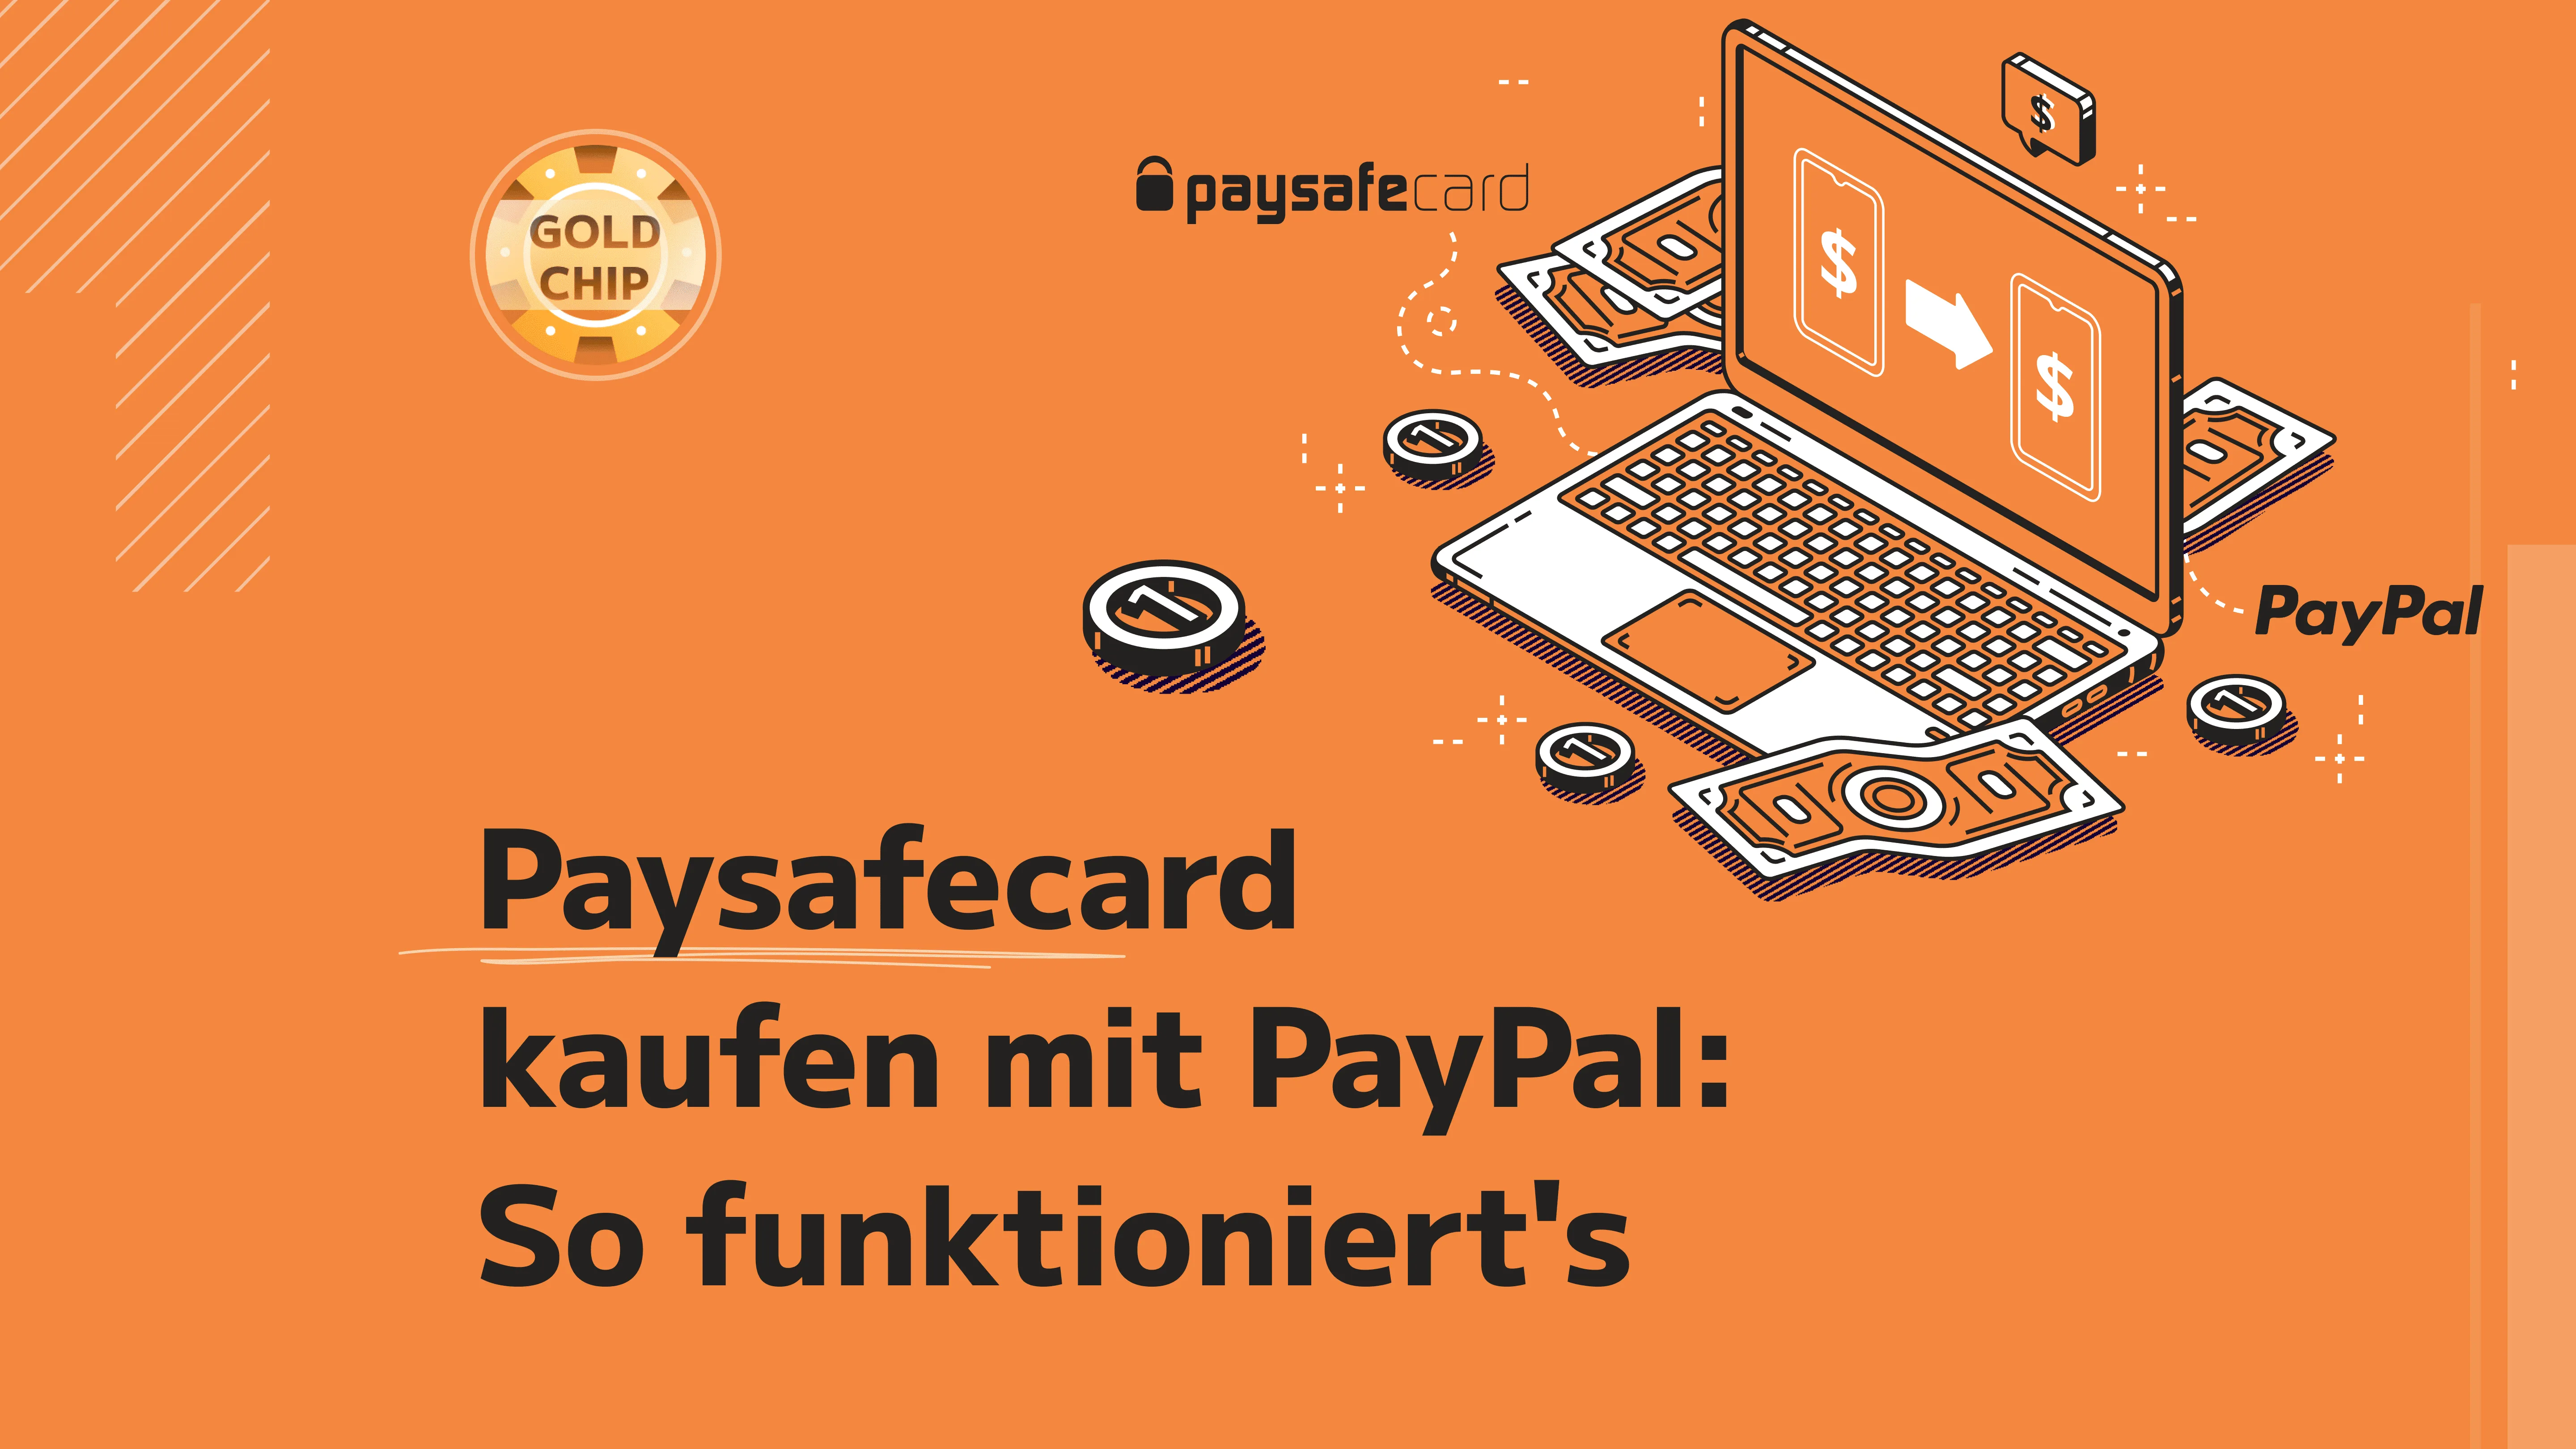 Paysafecard Kaufen Mit Paypal So Funktionierts